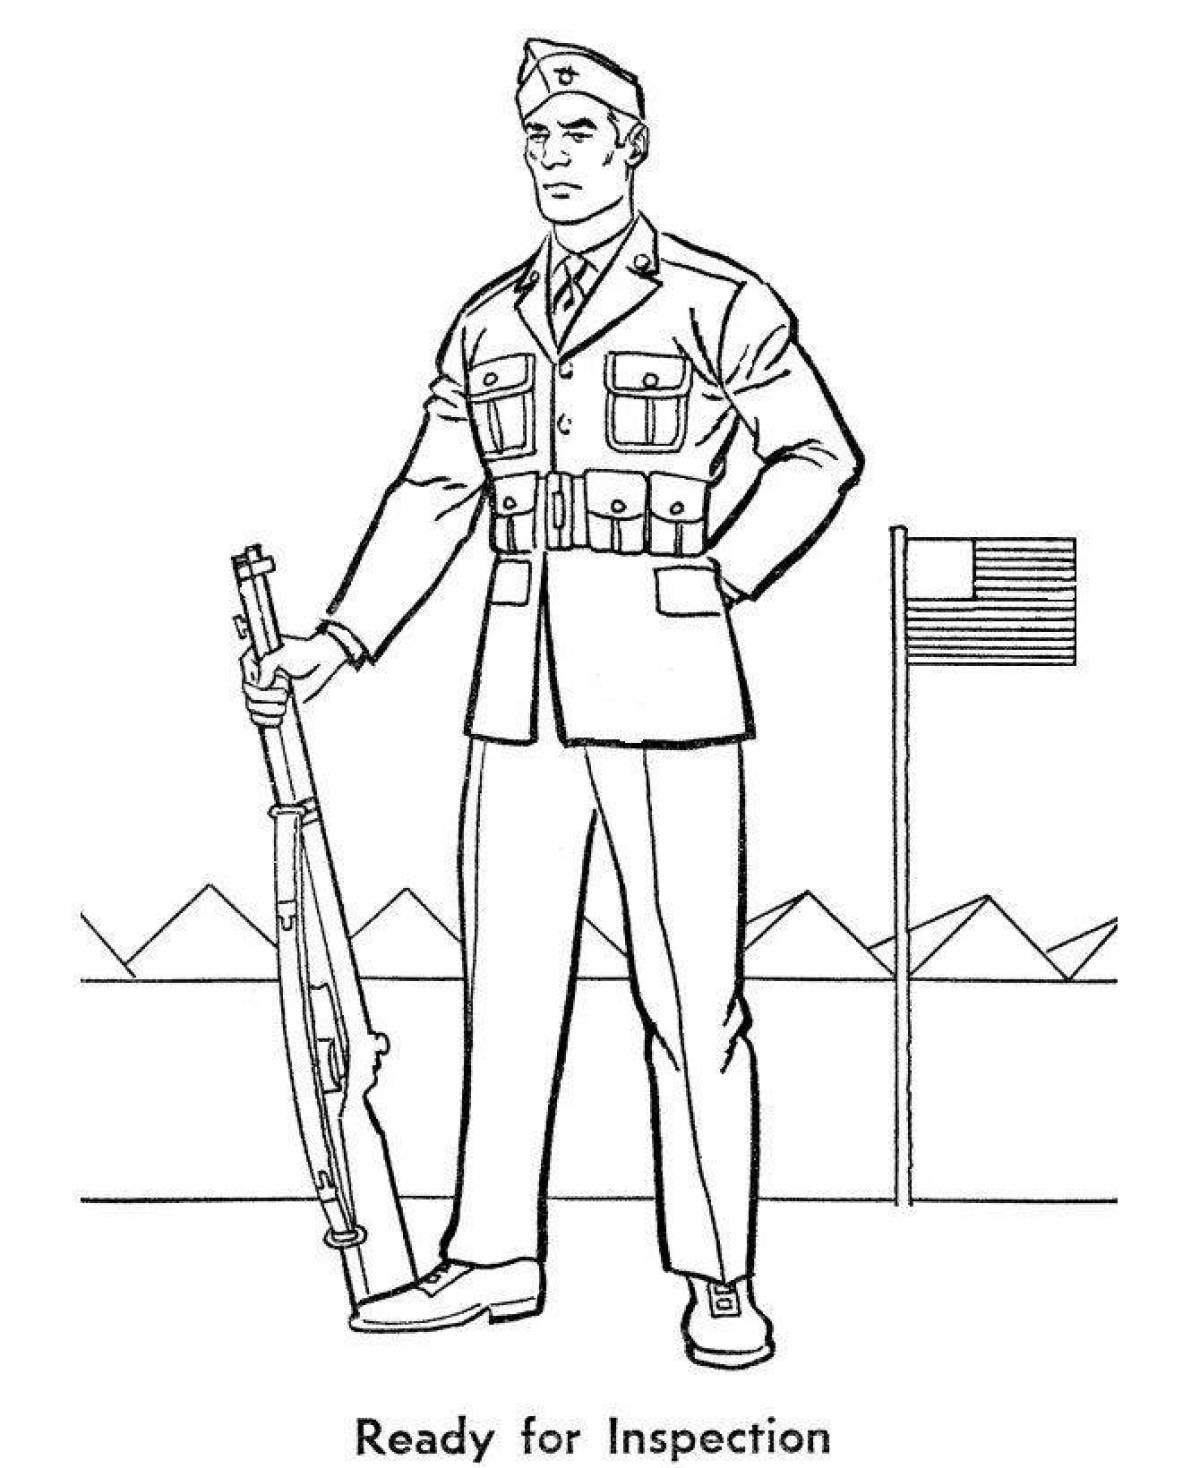 Impressive military profession coloring book